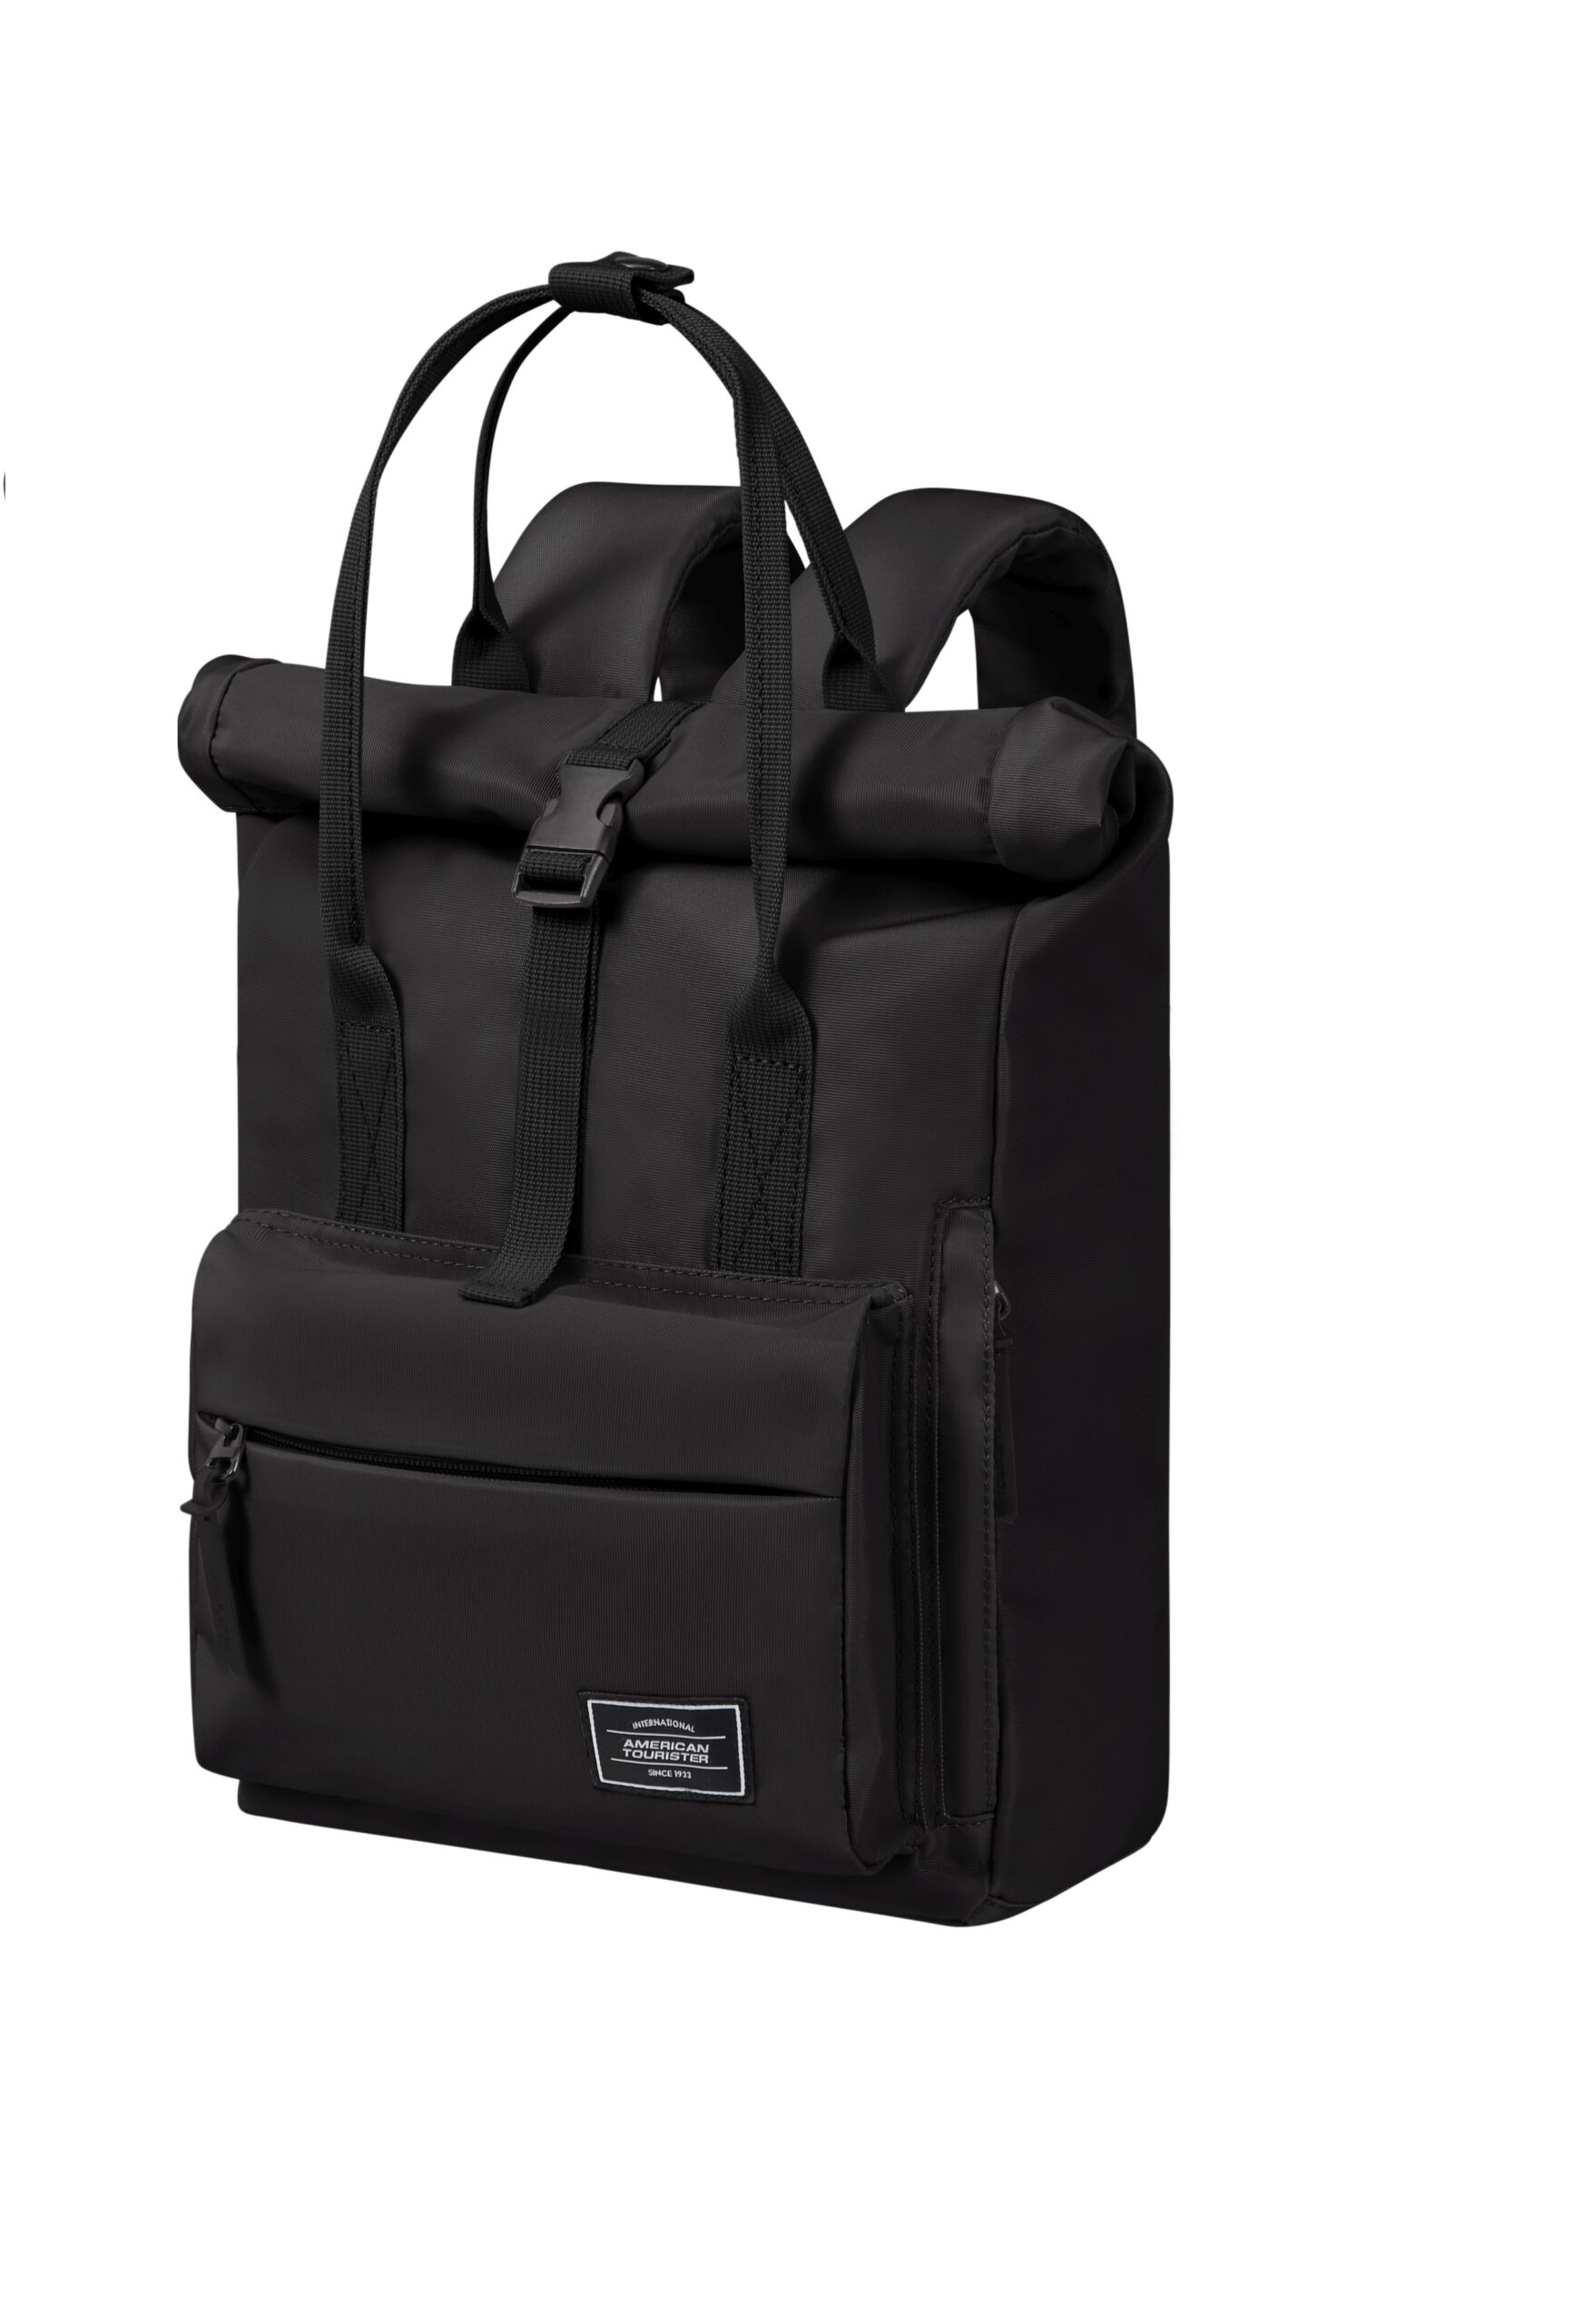 Laptoprucksack für Damen ¦ Business Rucksack bei Bag Selection kaufen